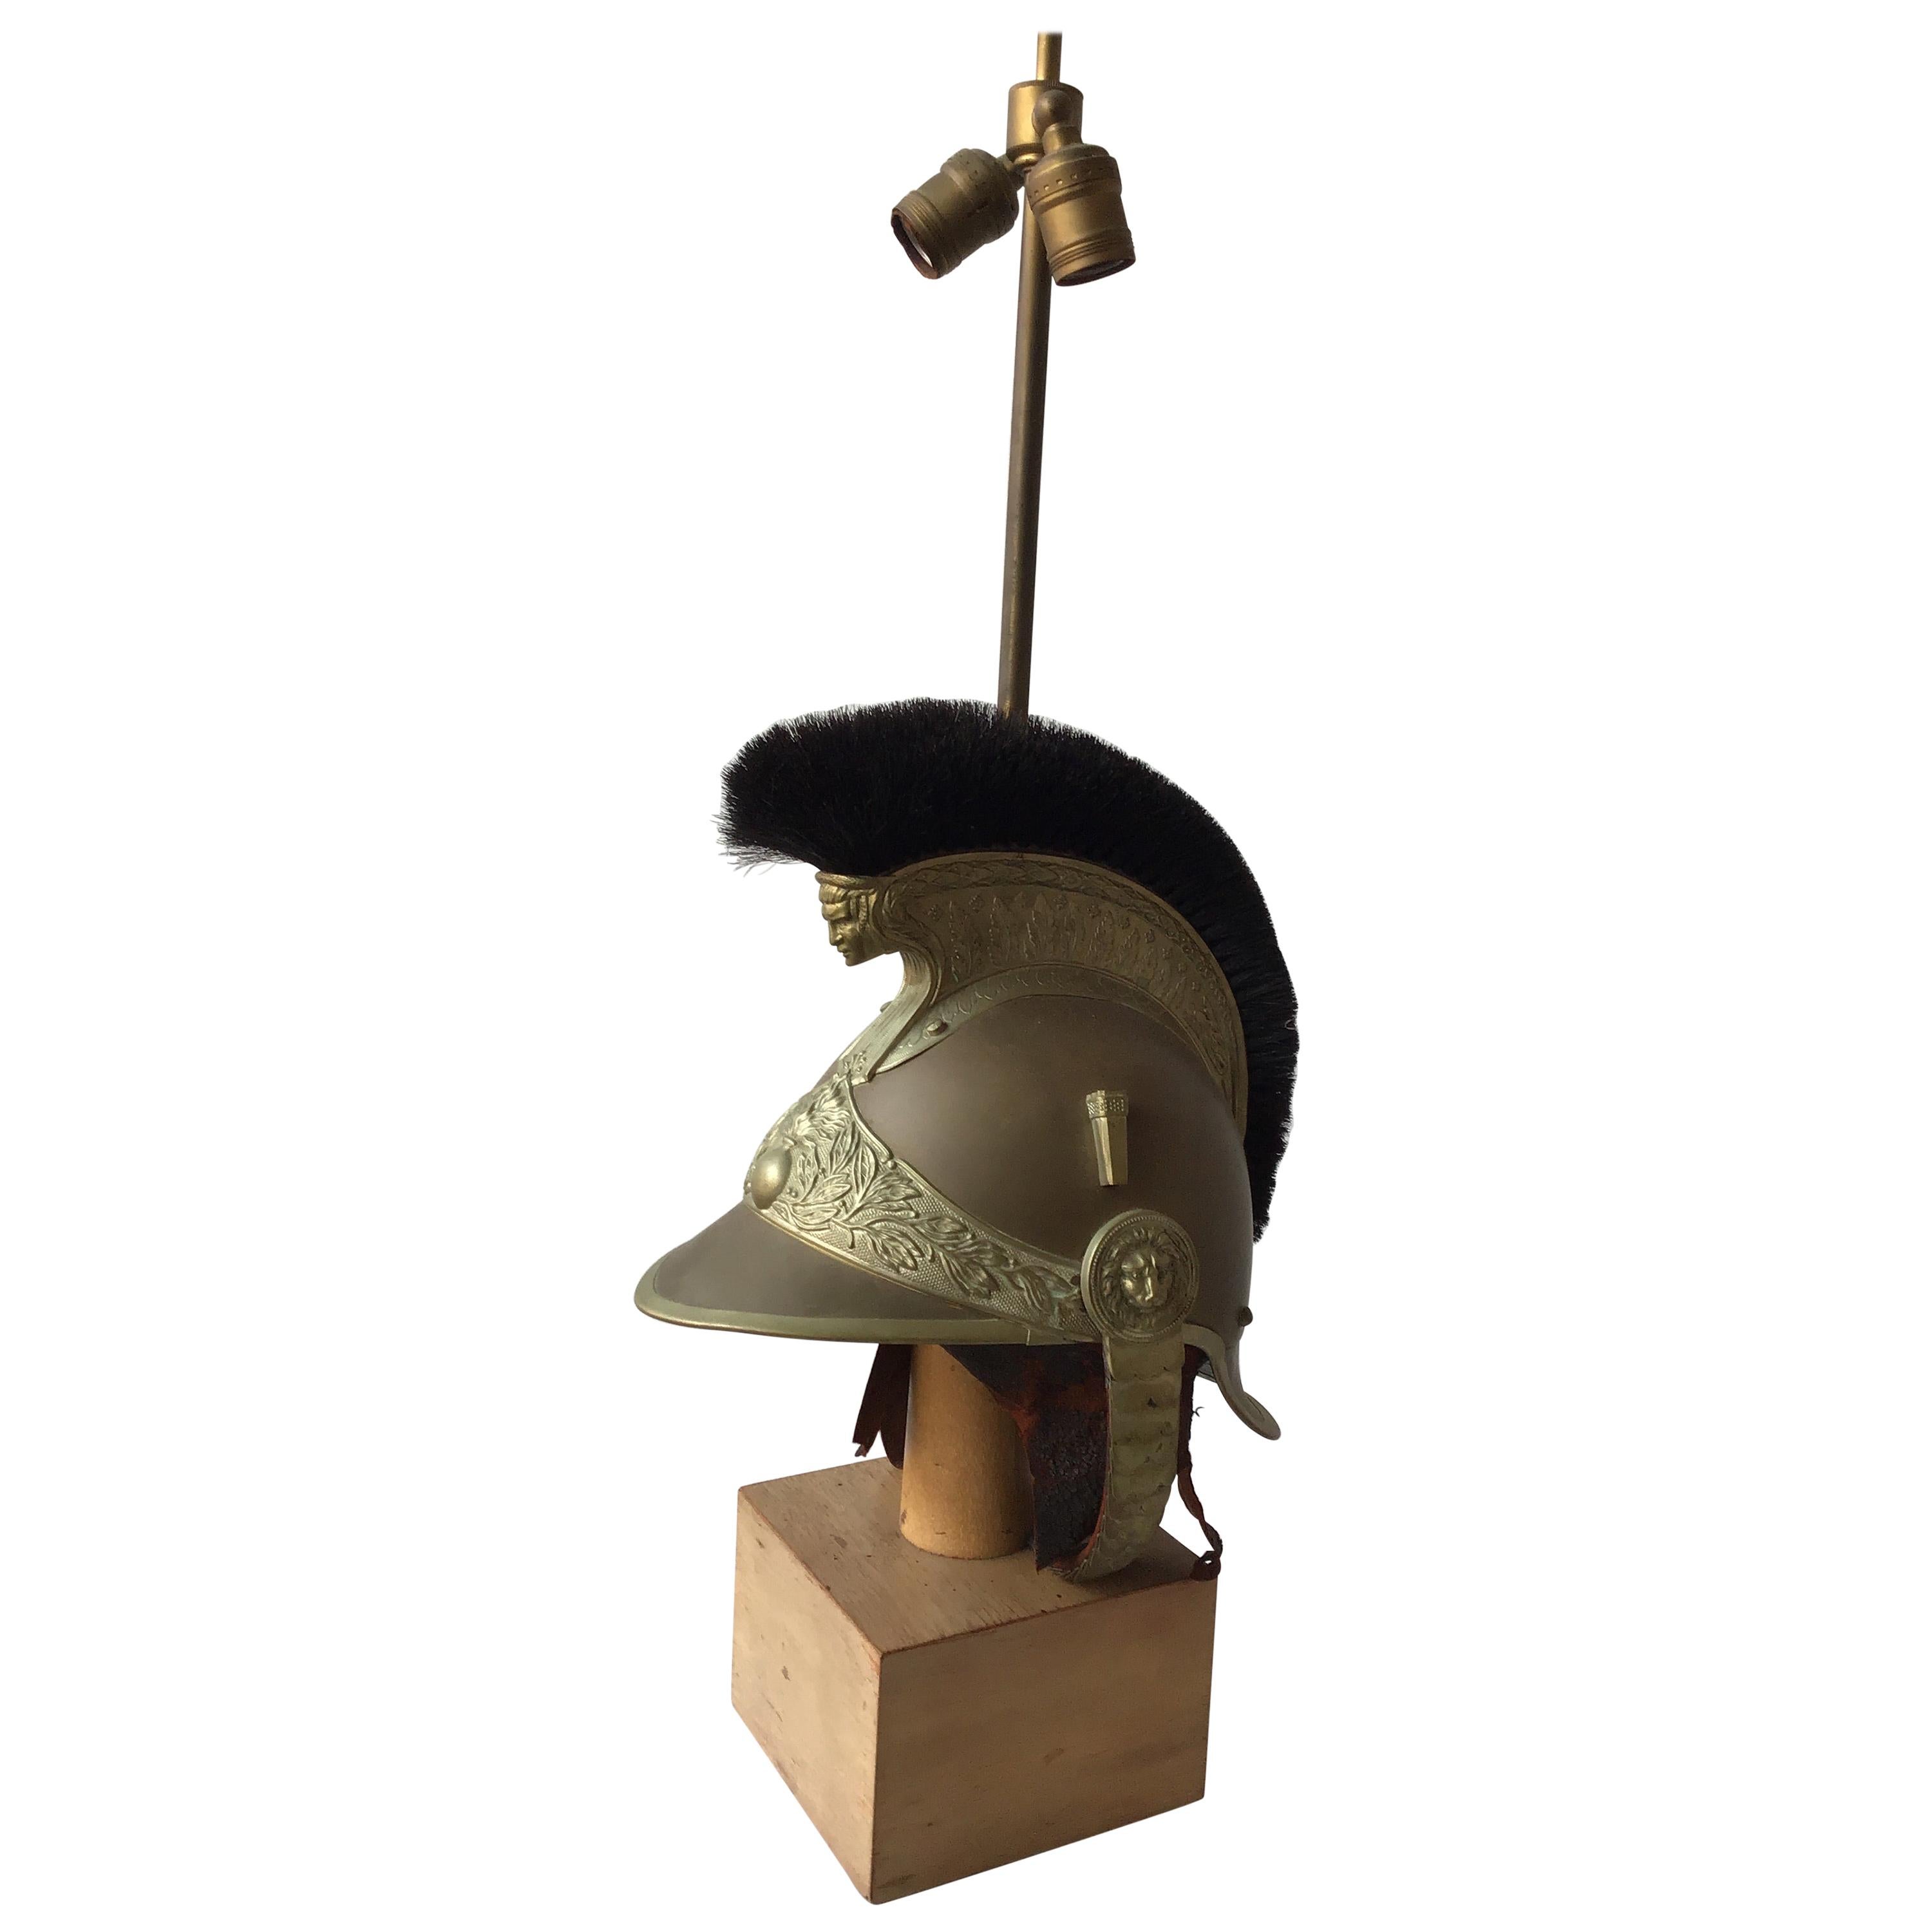 Lampe sur socle pour casque de pompier français des années 1840